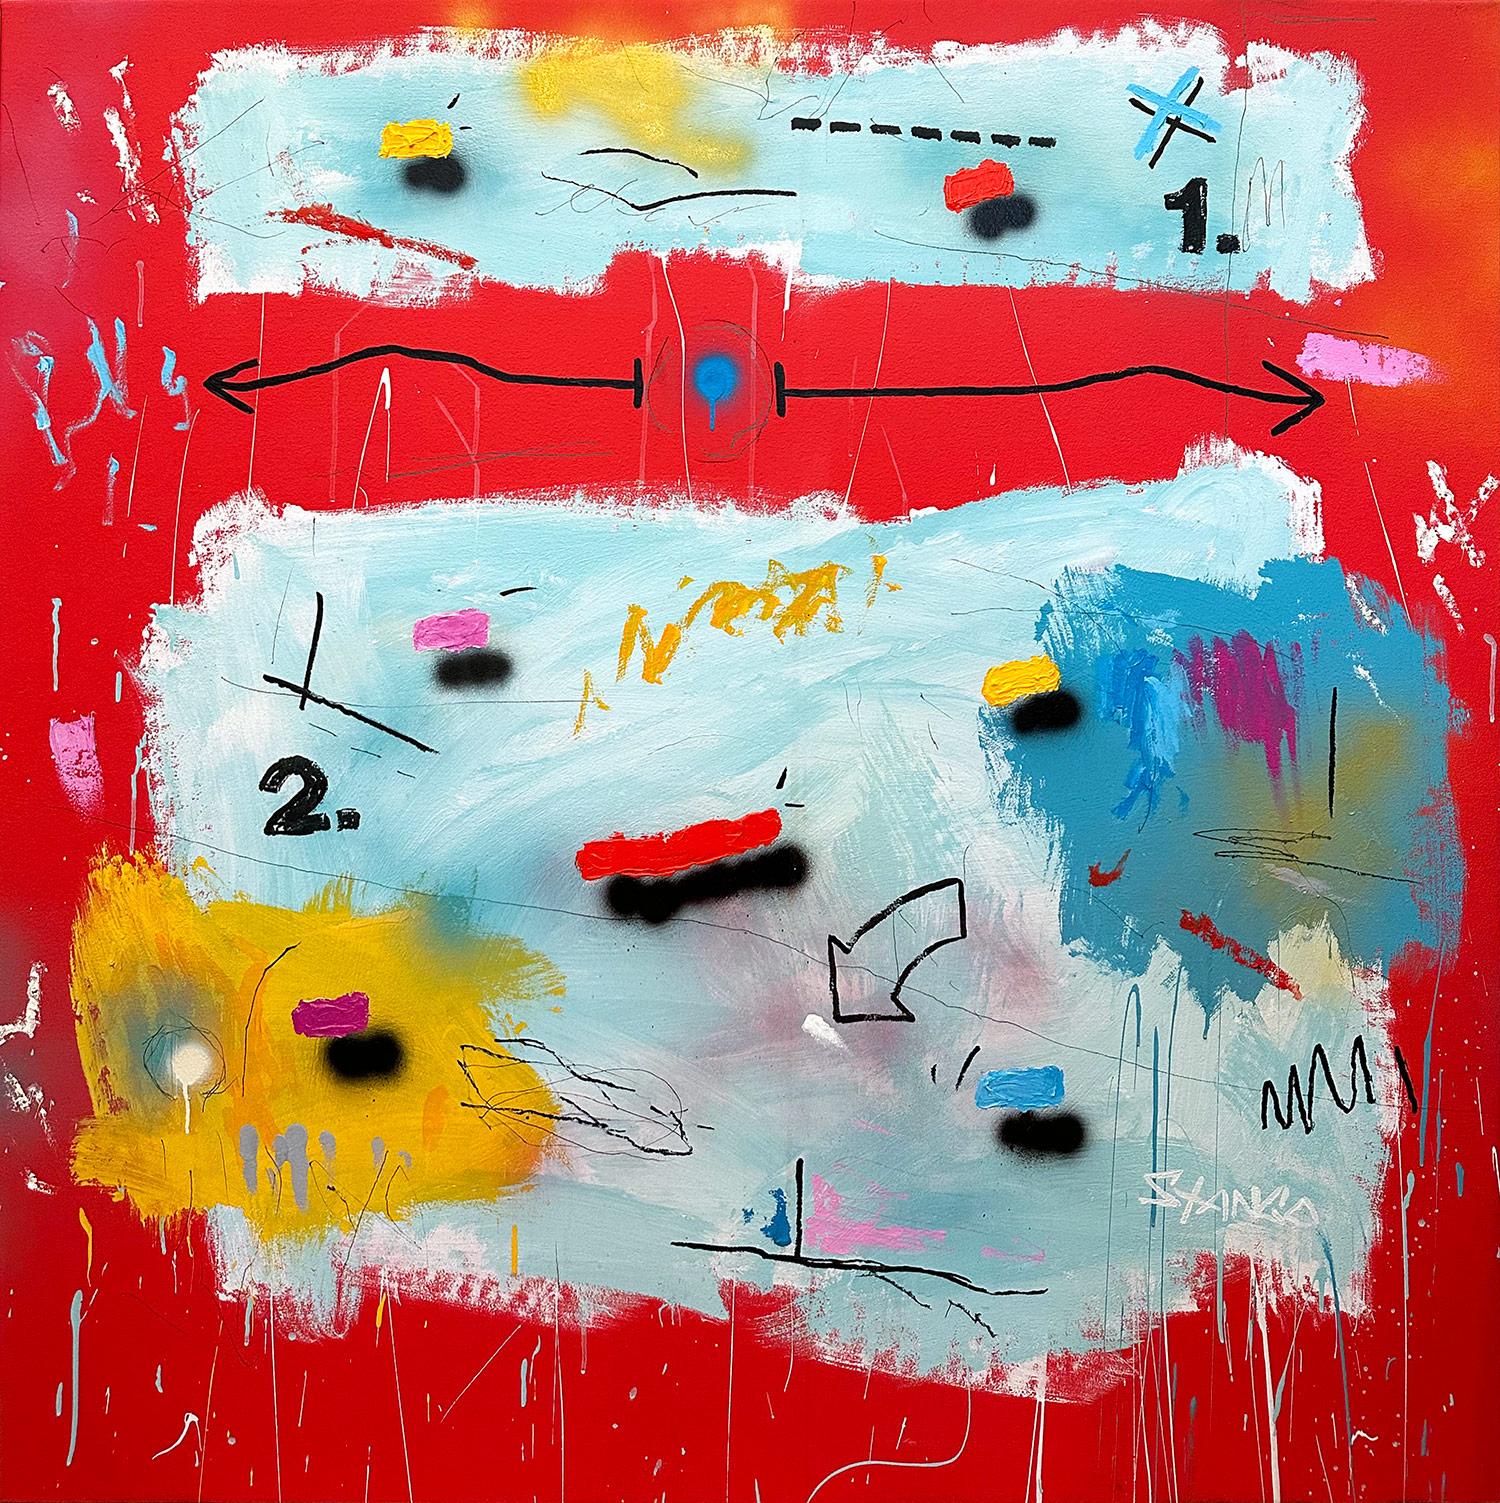 John Stango Abstract Painting – „Red Mustang“ Abstraktes Pop-Art-Gemälde in Acryl auf Leinwand mit buntem und rotem Hintergrund